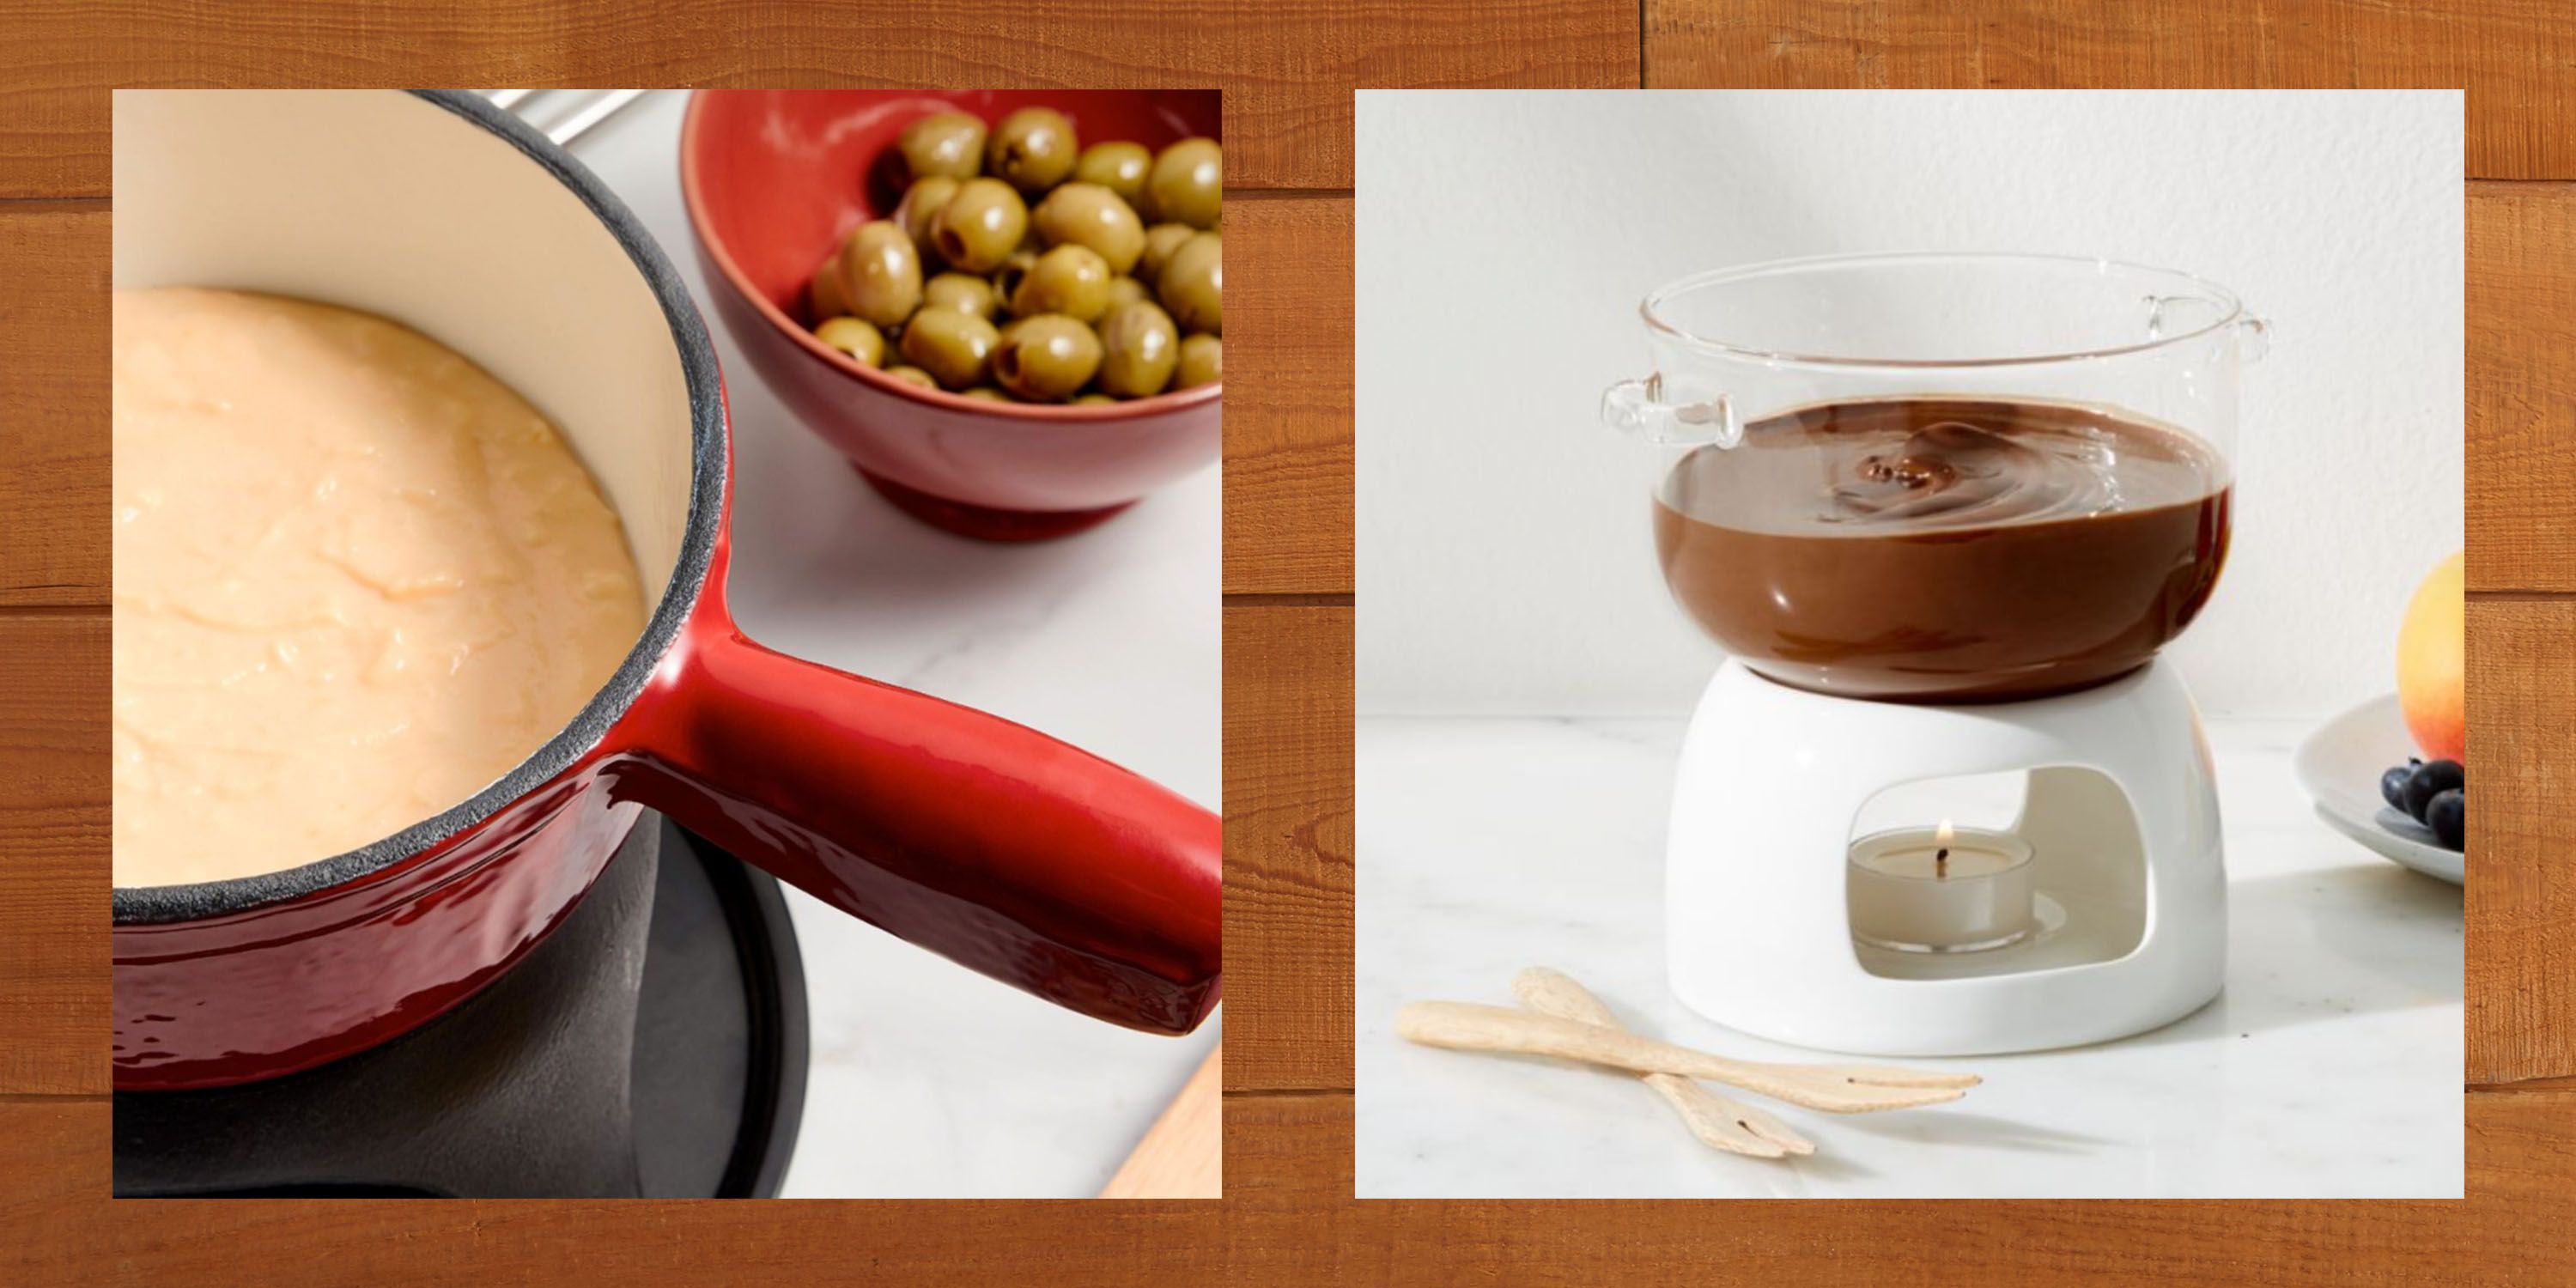 https://hips.hearstapps.com/hmg-prod/images/best-fondue-pot-1624567954.jpg